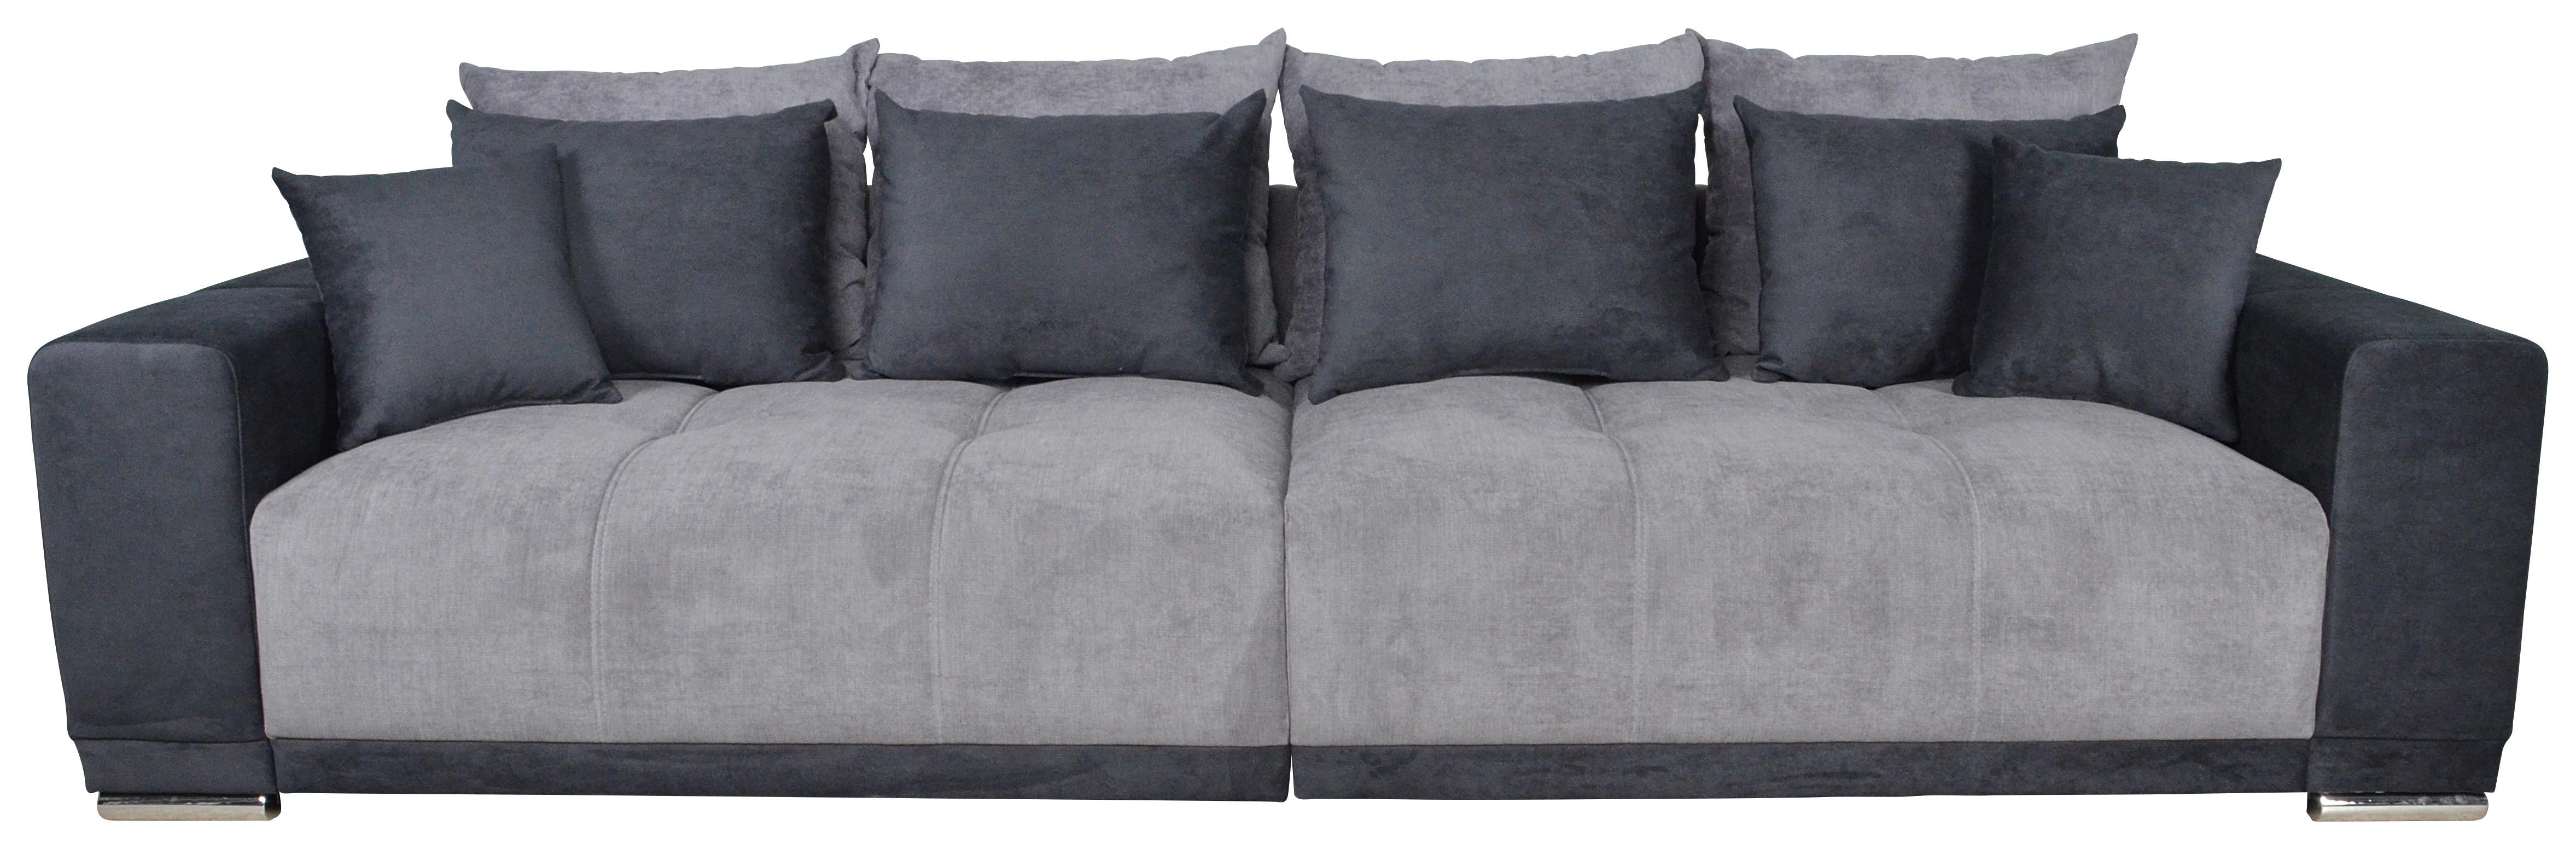 Big Sofa Xantia grau B/T: ca. 318x120 cm Xantia - Chrom/grau (318,00/120,00cm)